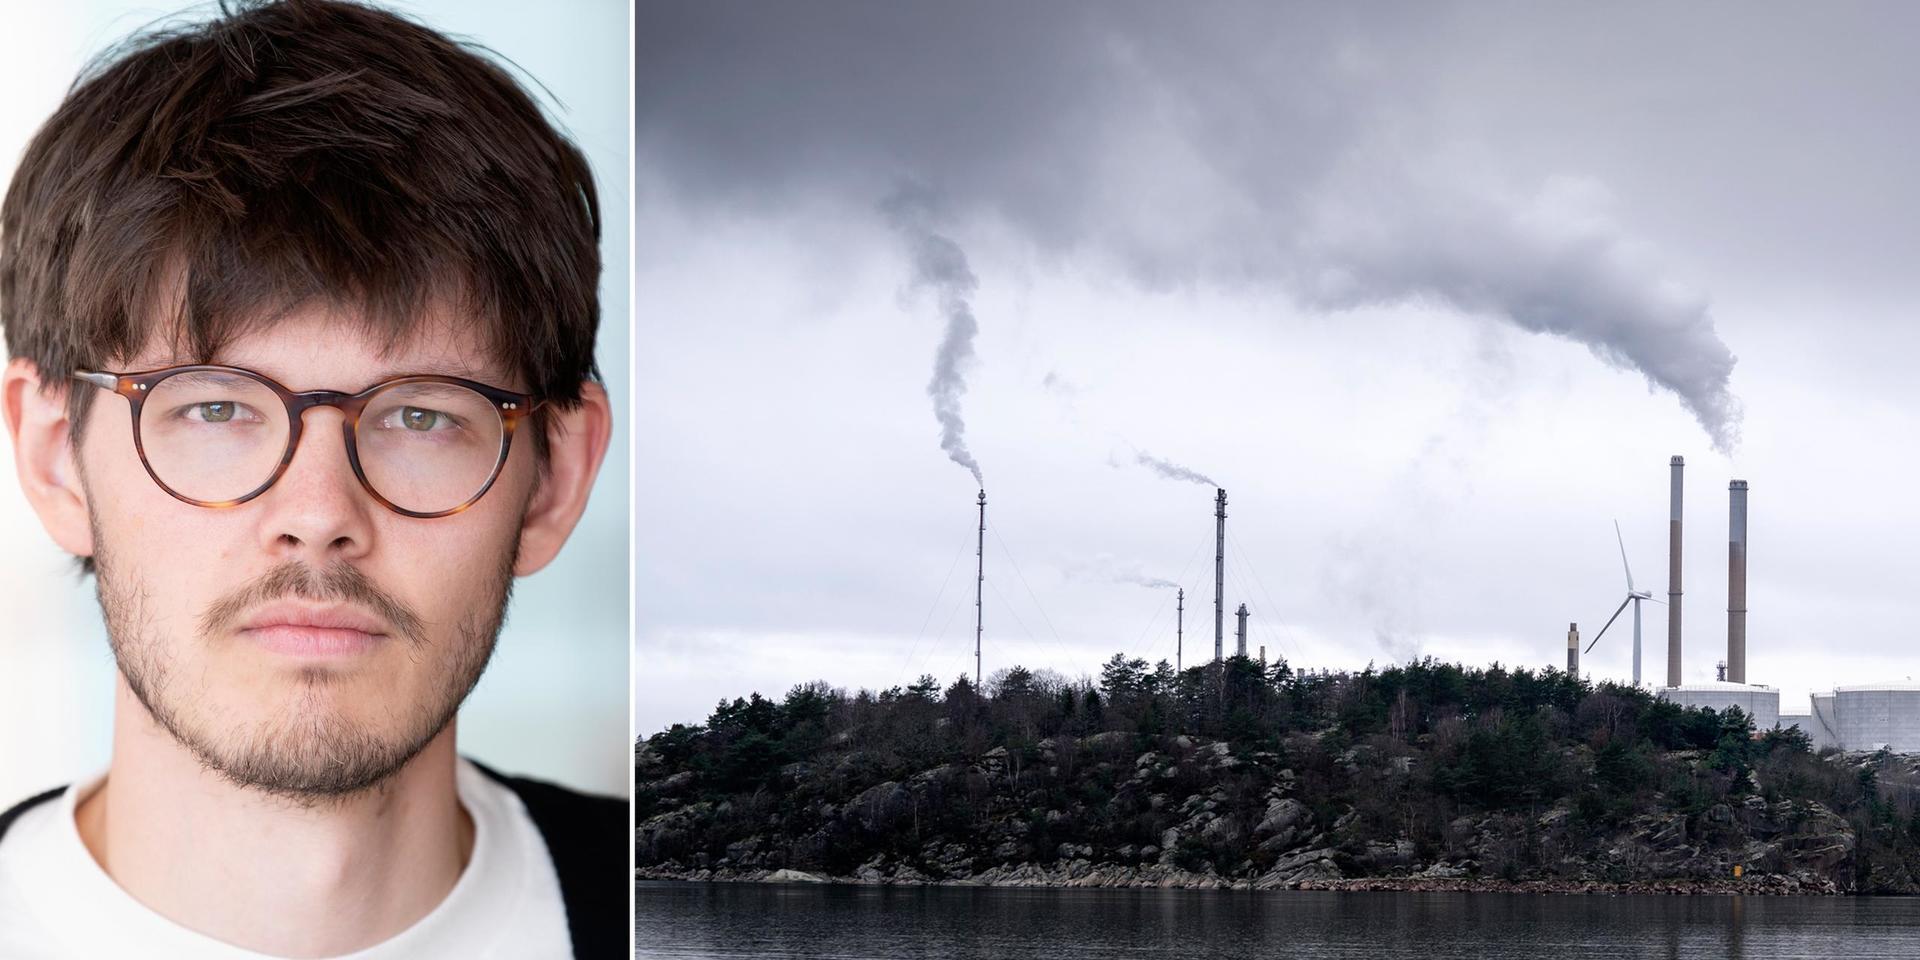 Ökade utsläpp i Lysekil kommer inte innebära en ökad press på kolkraftverken i Europa, även om Moderaternas representanter i EU kanske skulle önska att det var så, skriver debattören.